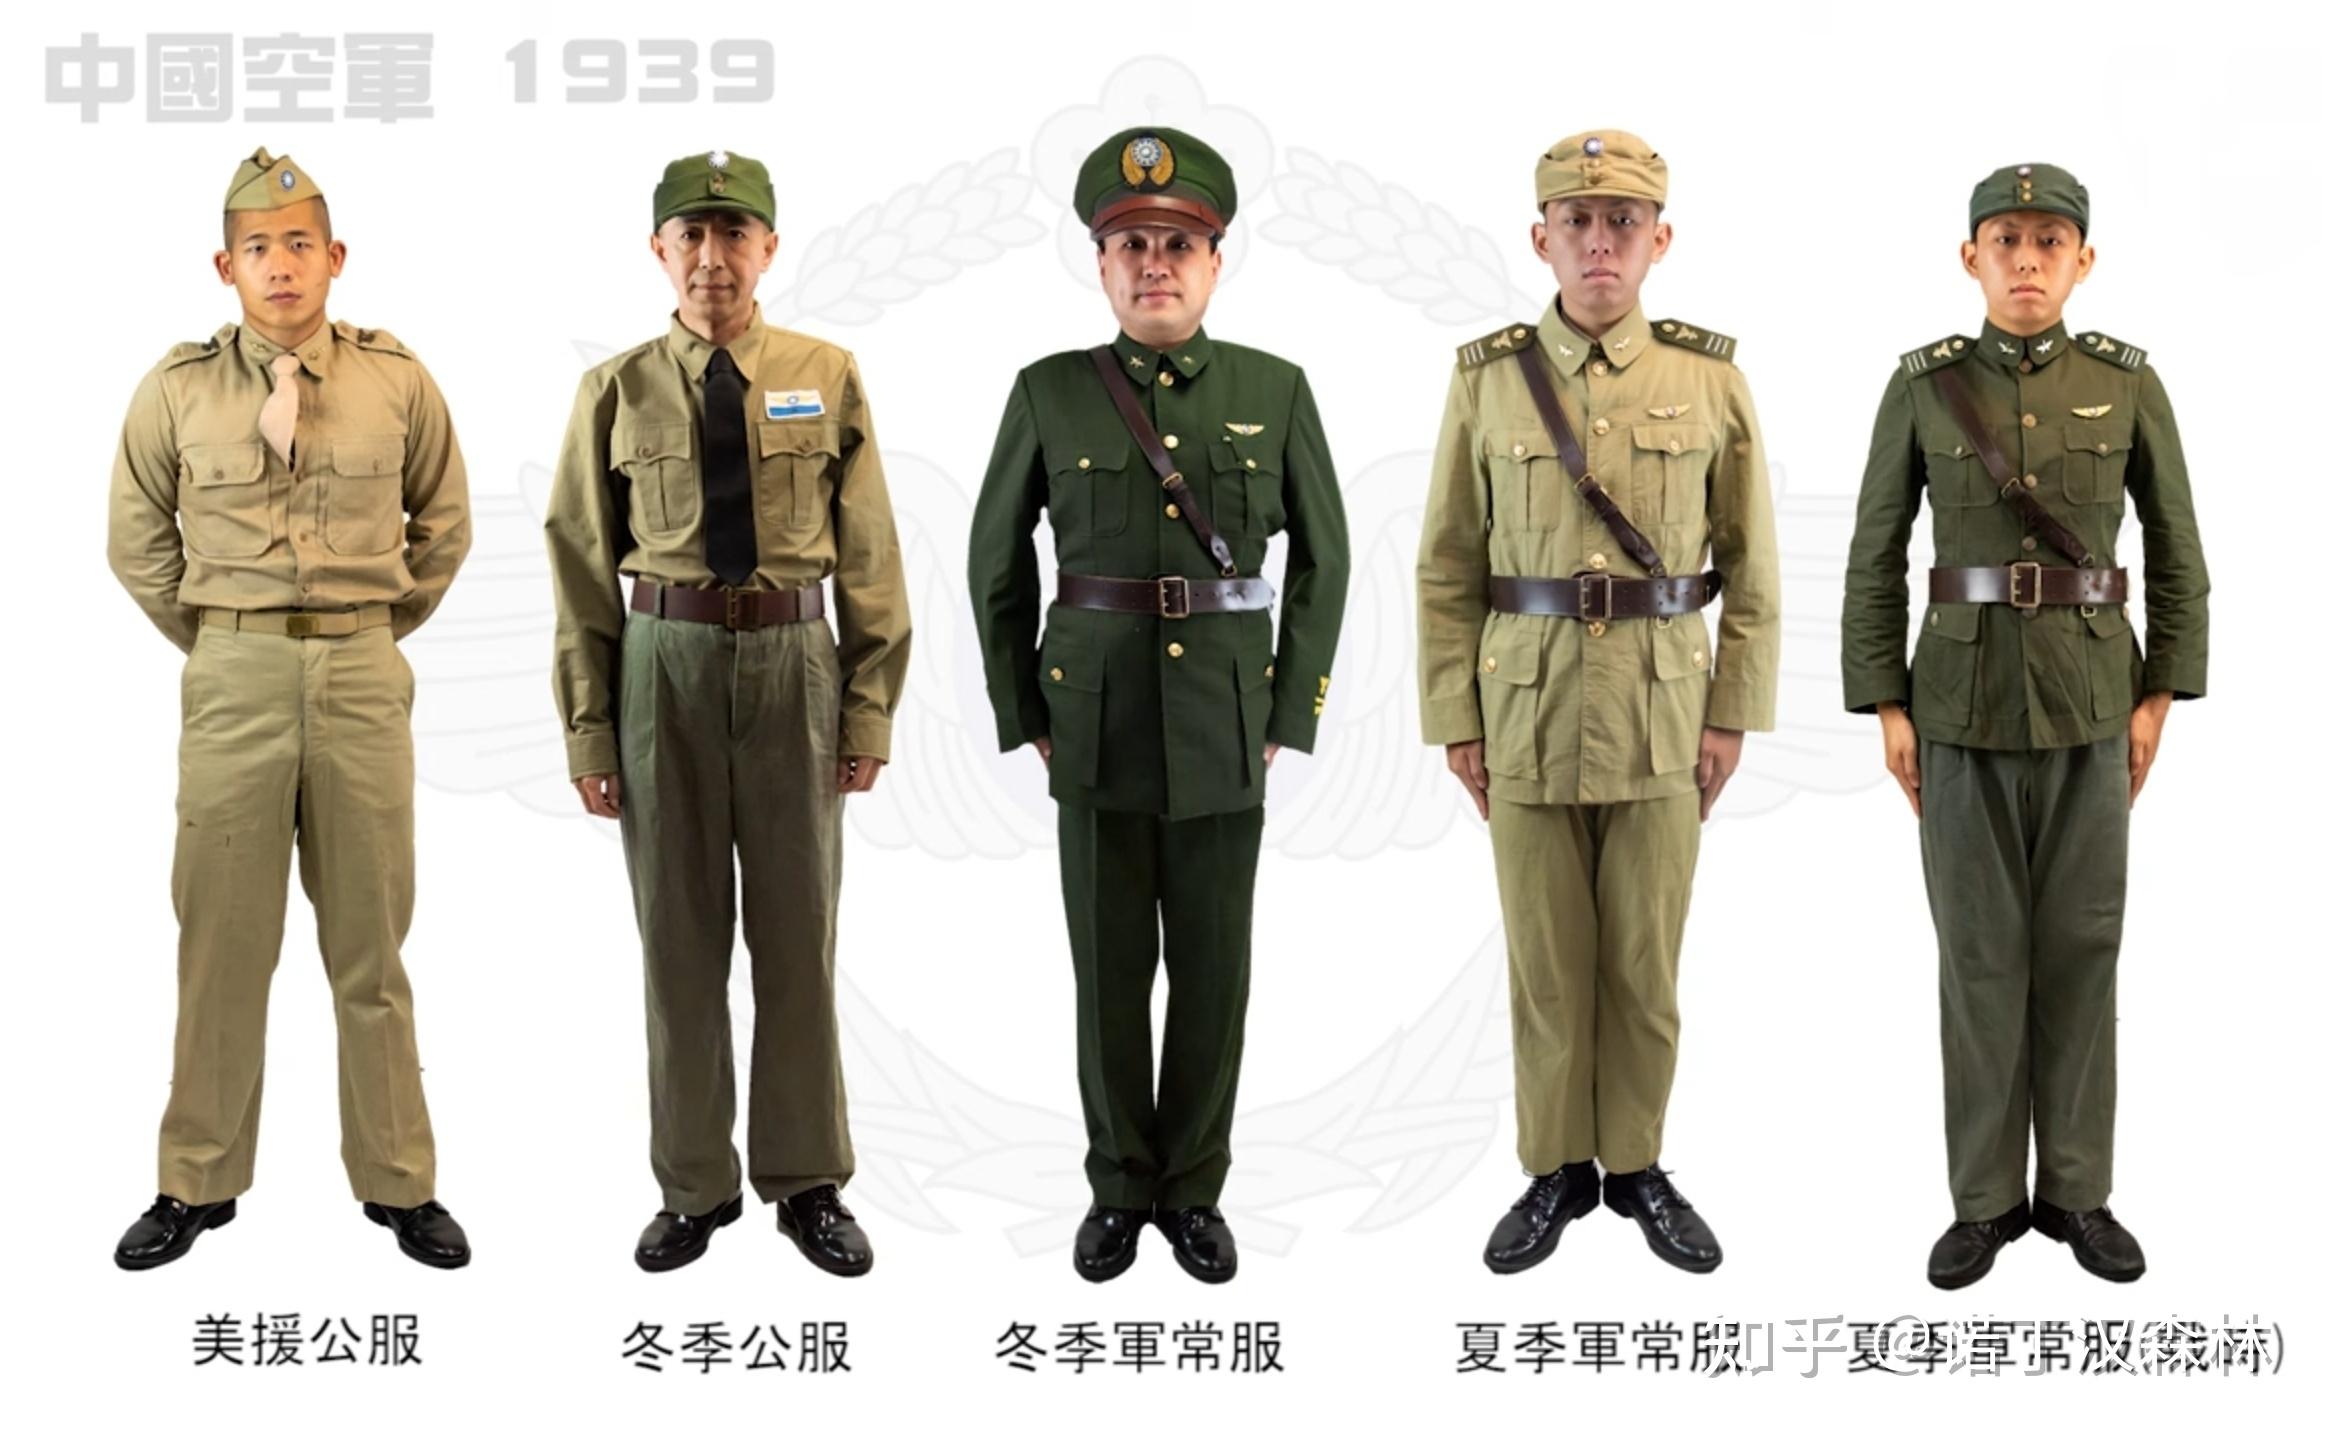 1938年以后的果府中央空军 军常服肩章,袖章图样